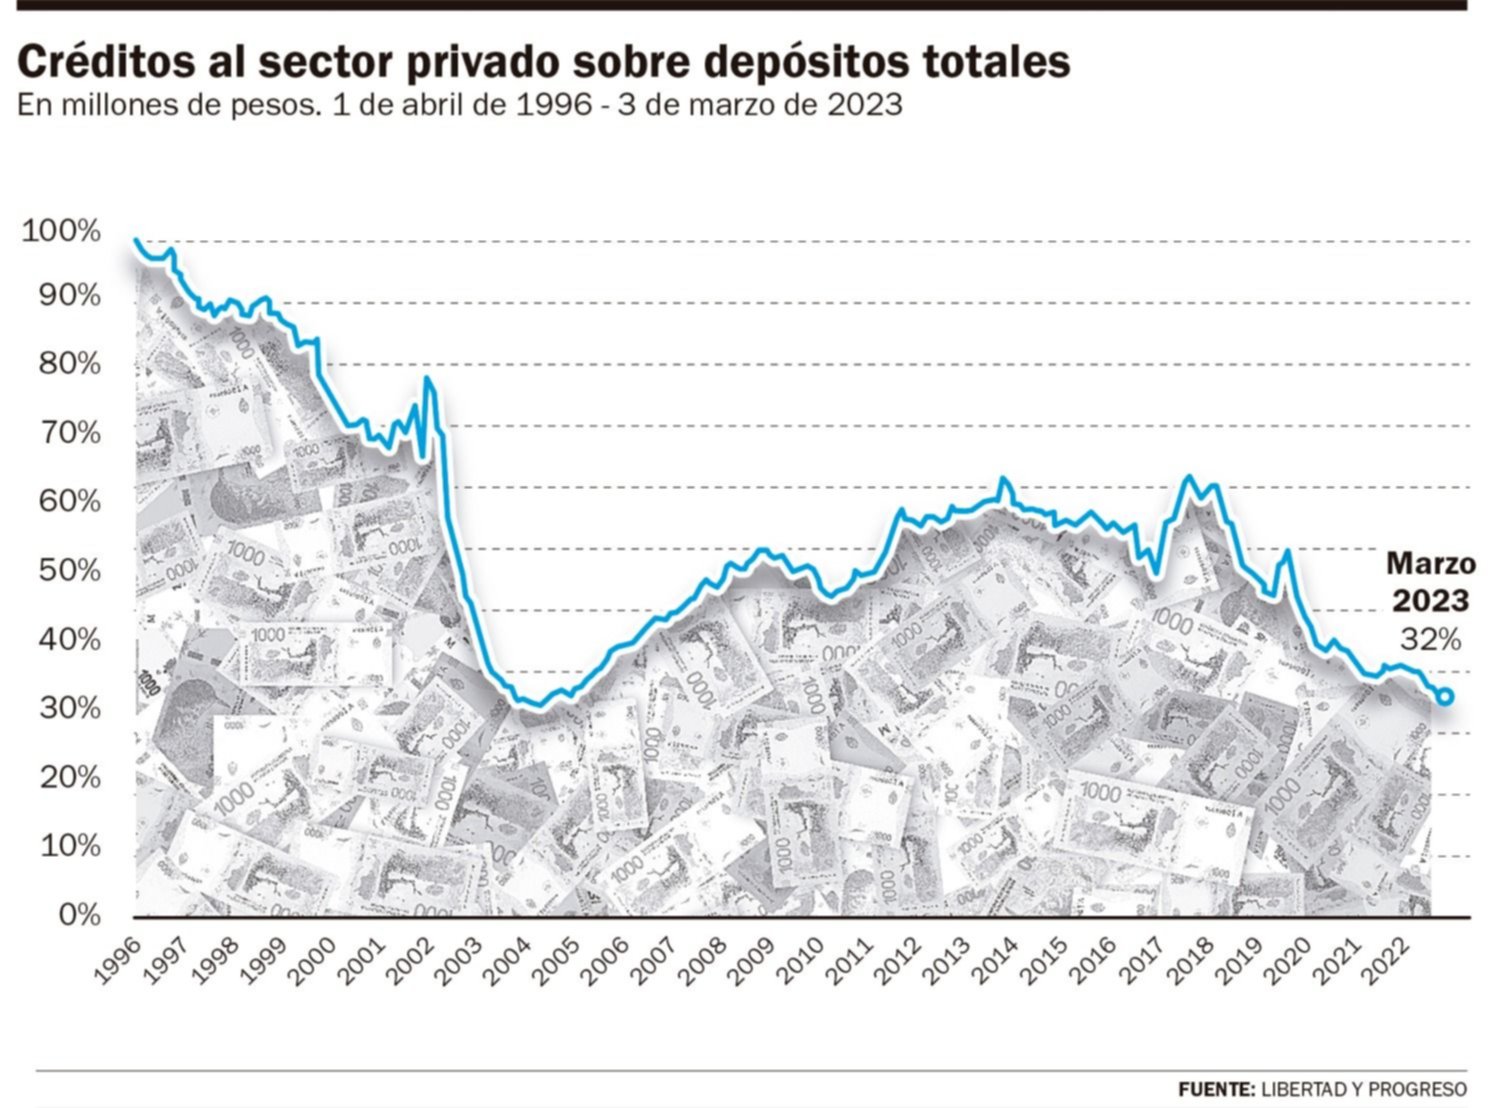 El crédito al sector privado está en su peor marca de los últimos 20 años